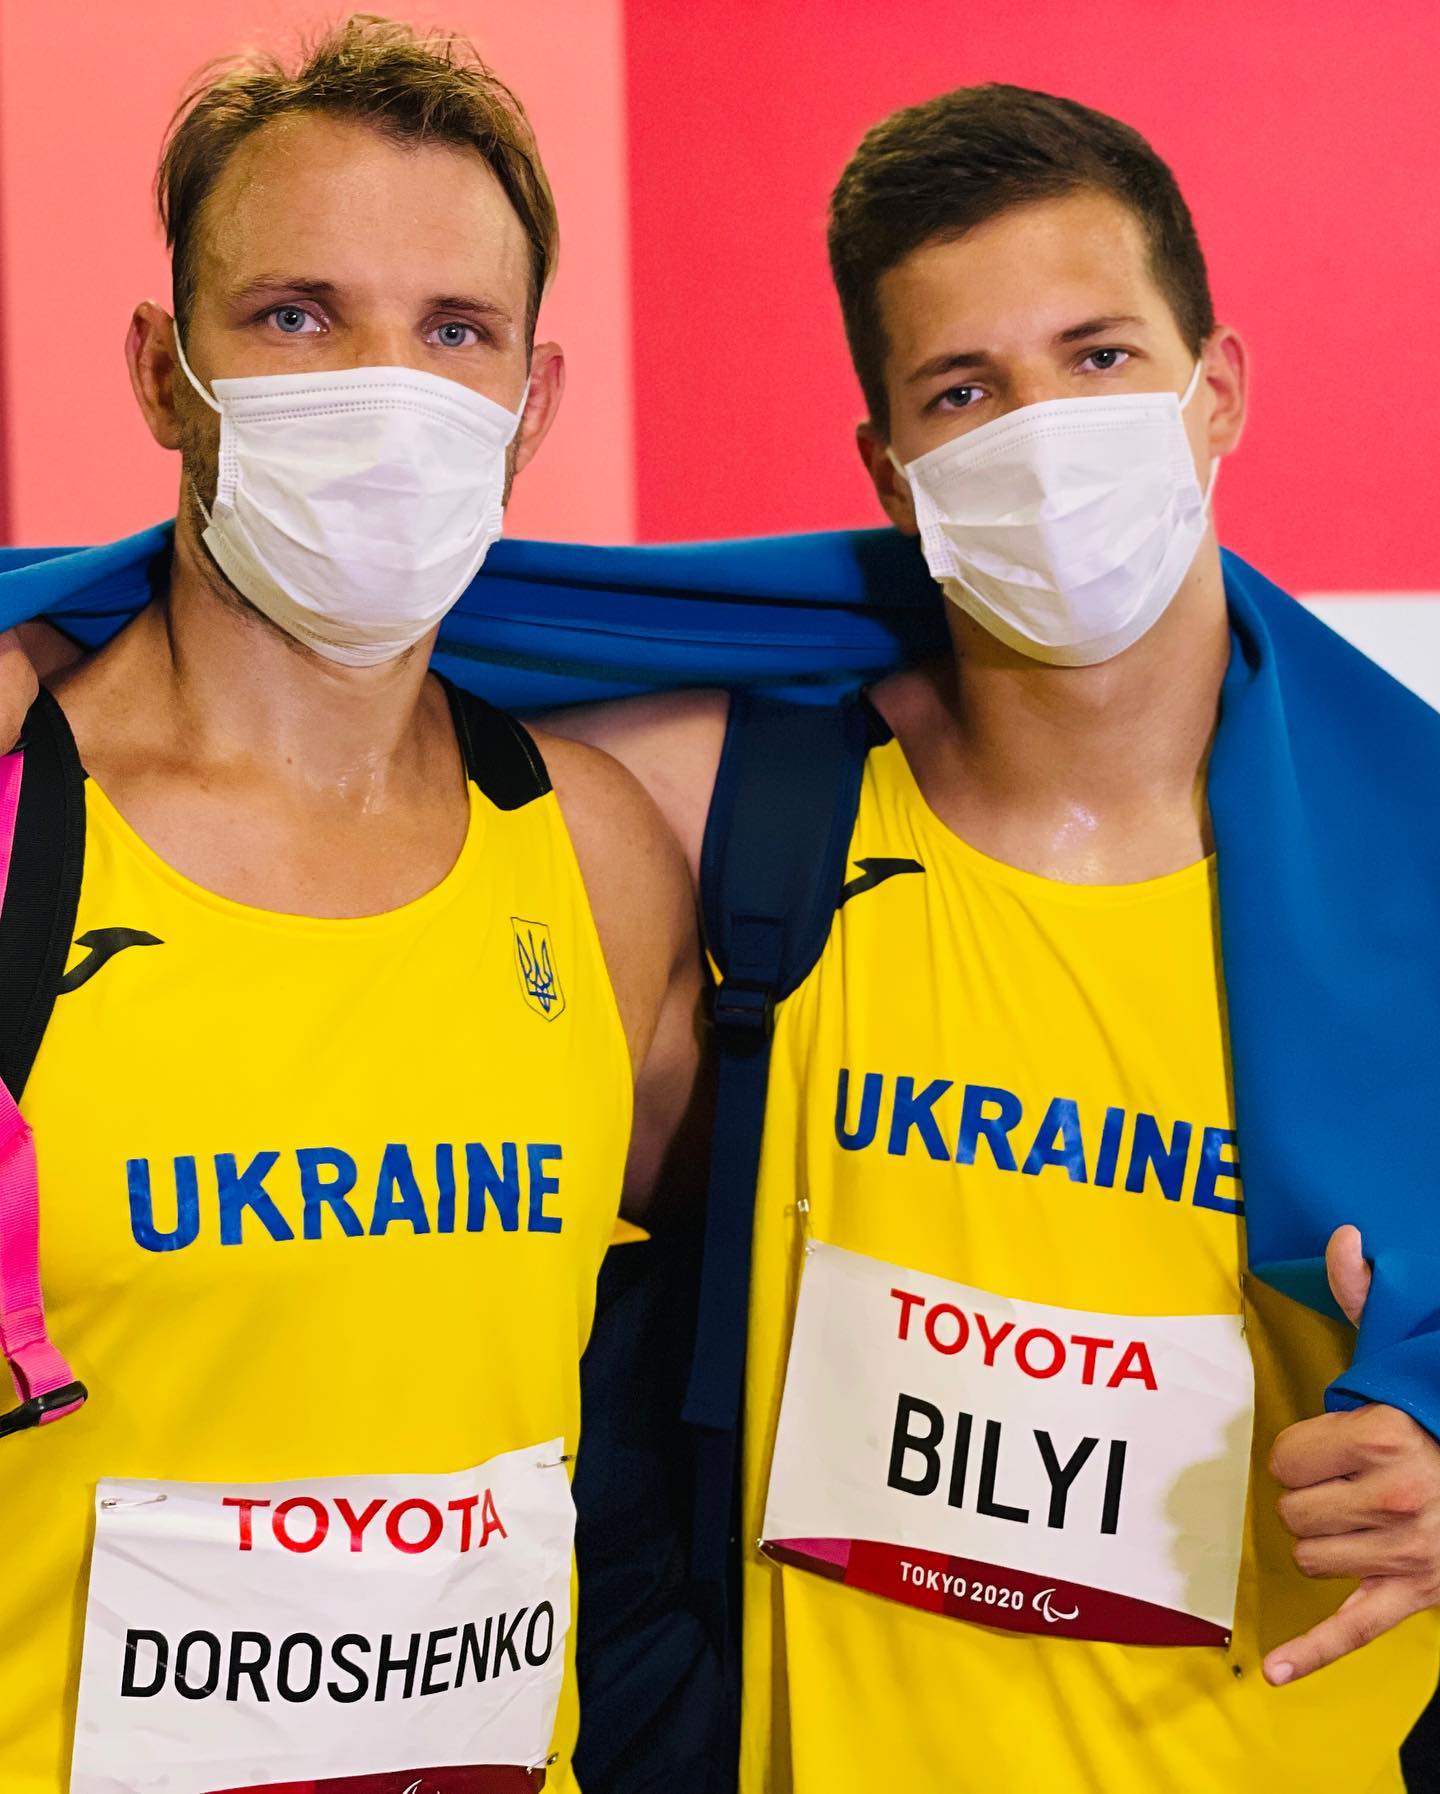 Украинцы завоевали медали на Паралимпиаде. Скриншот фейсбук-сообщения